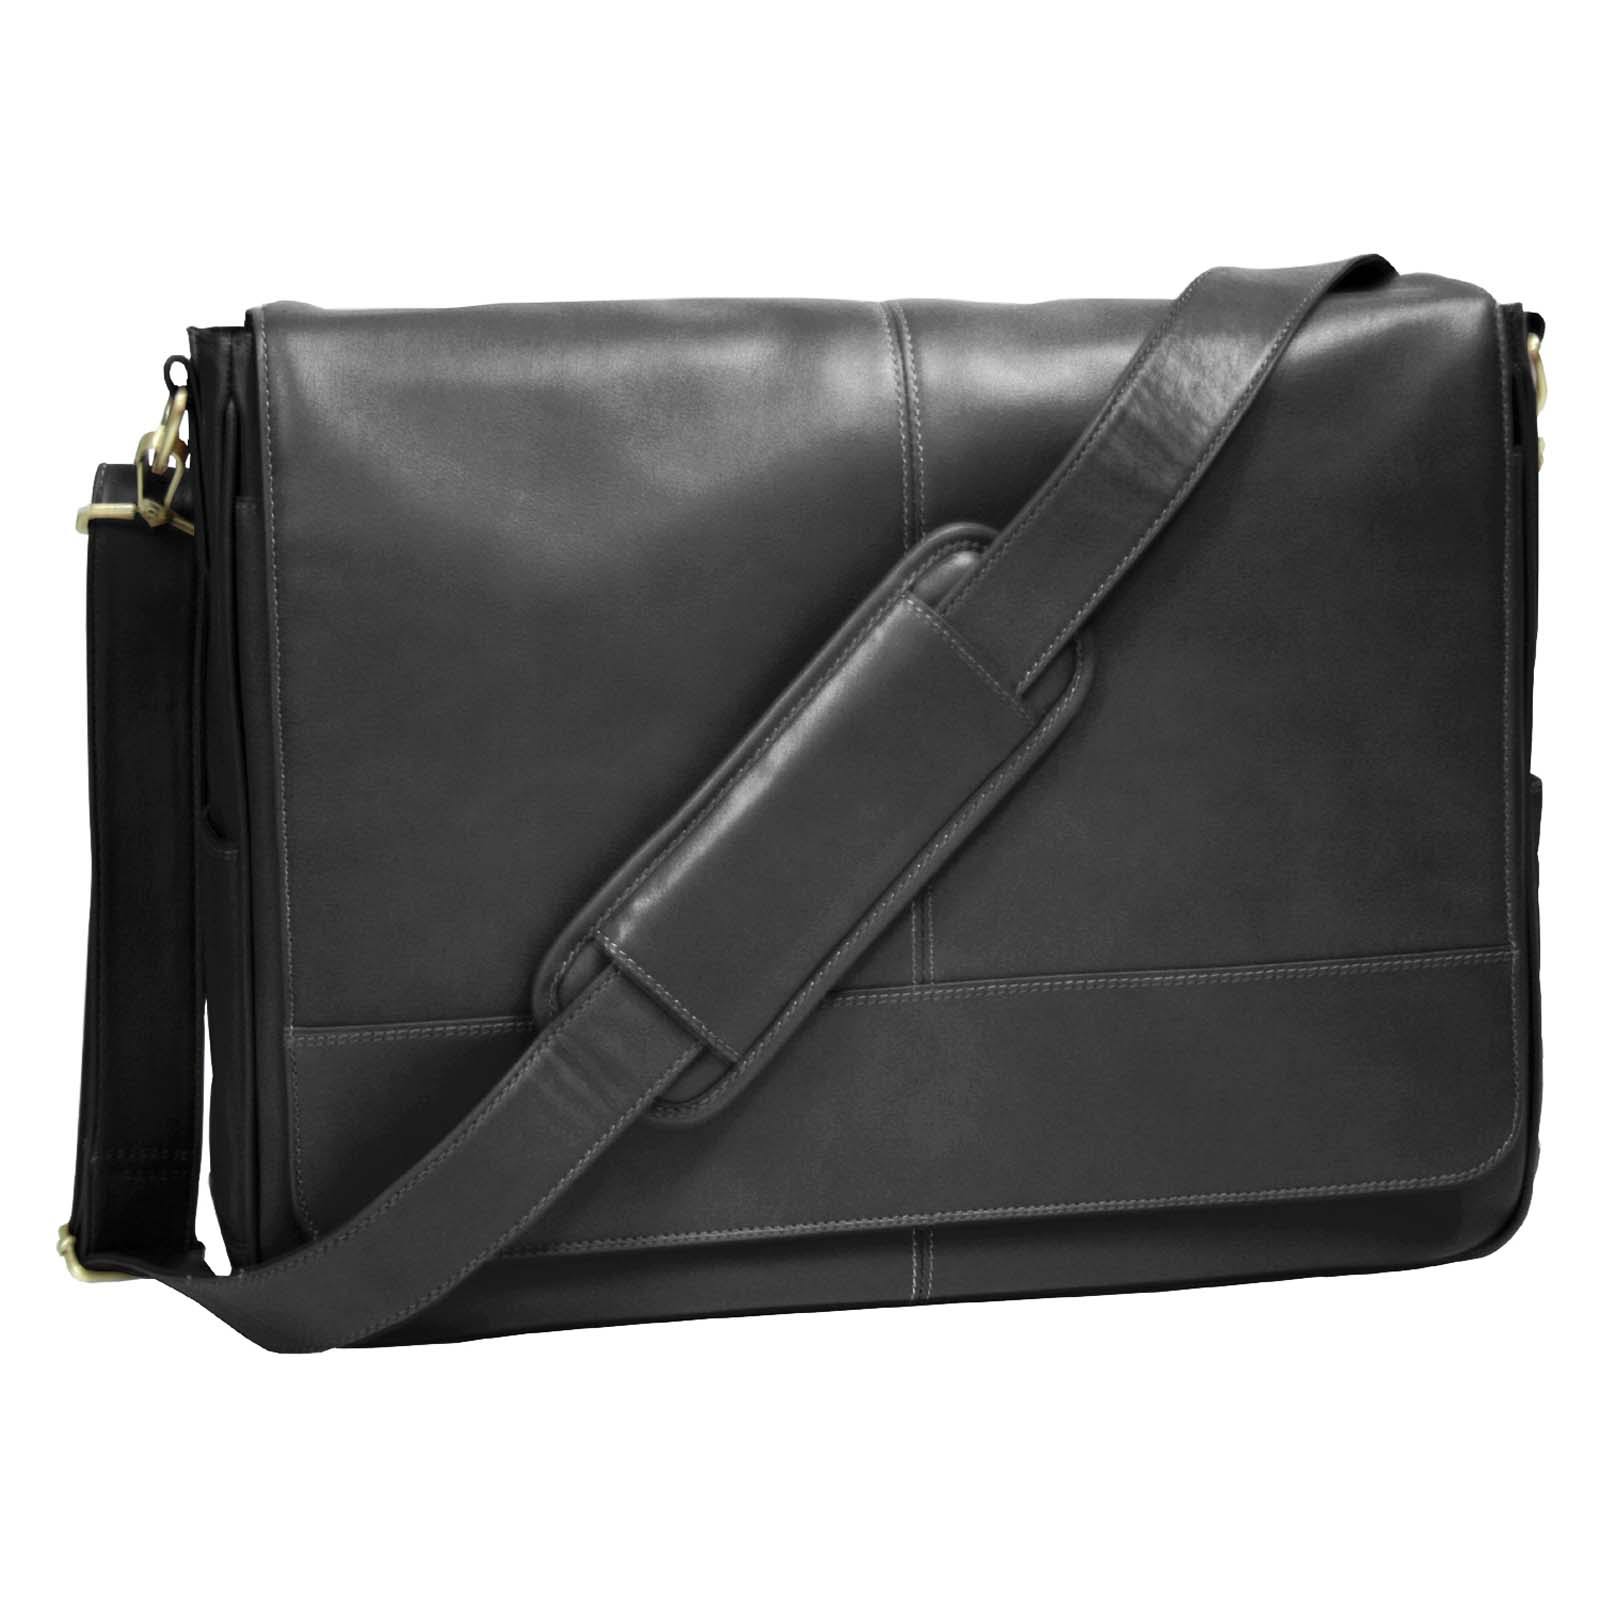 Royce Leather Messenger Bag - Black - WGL-1-s